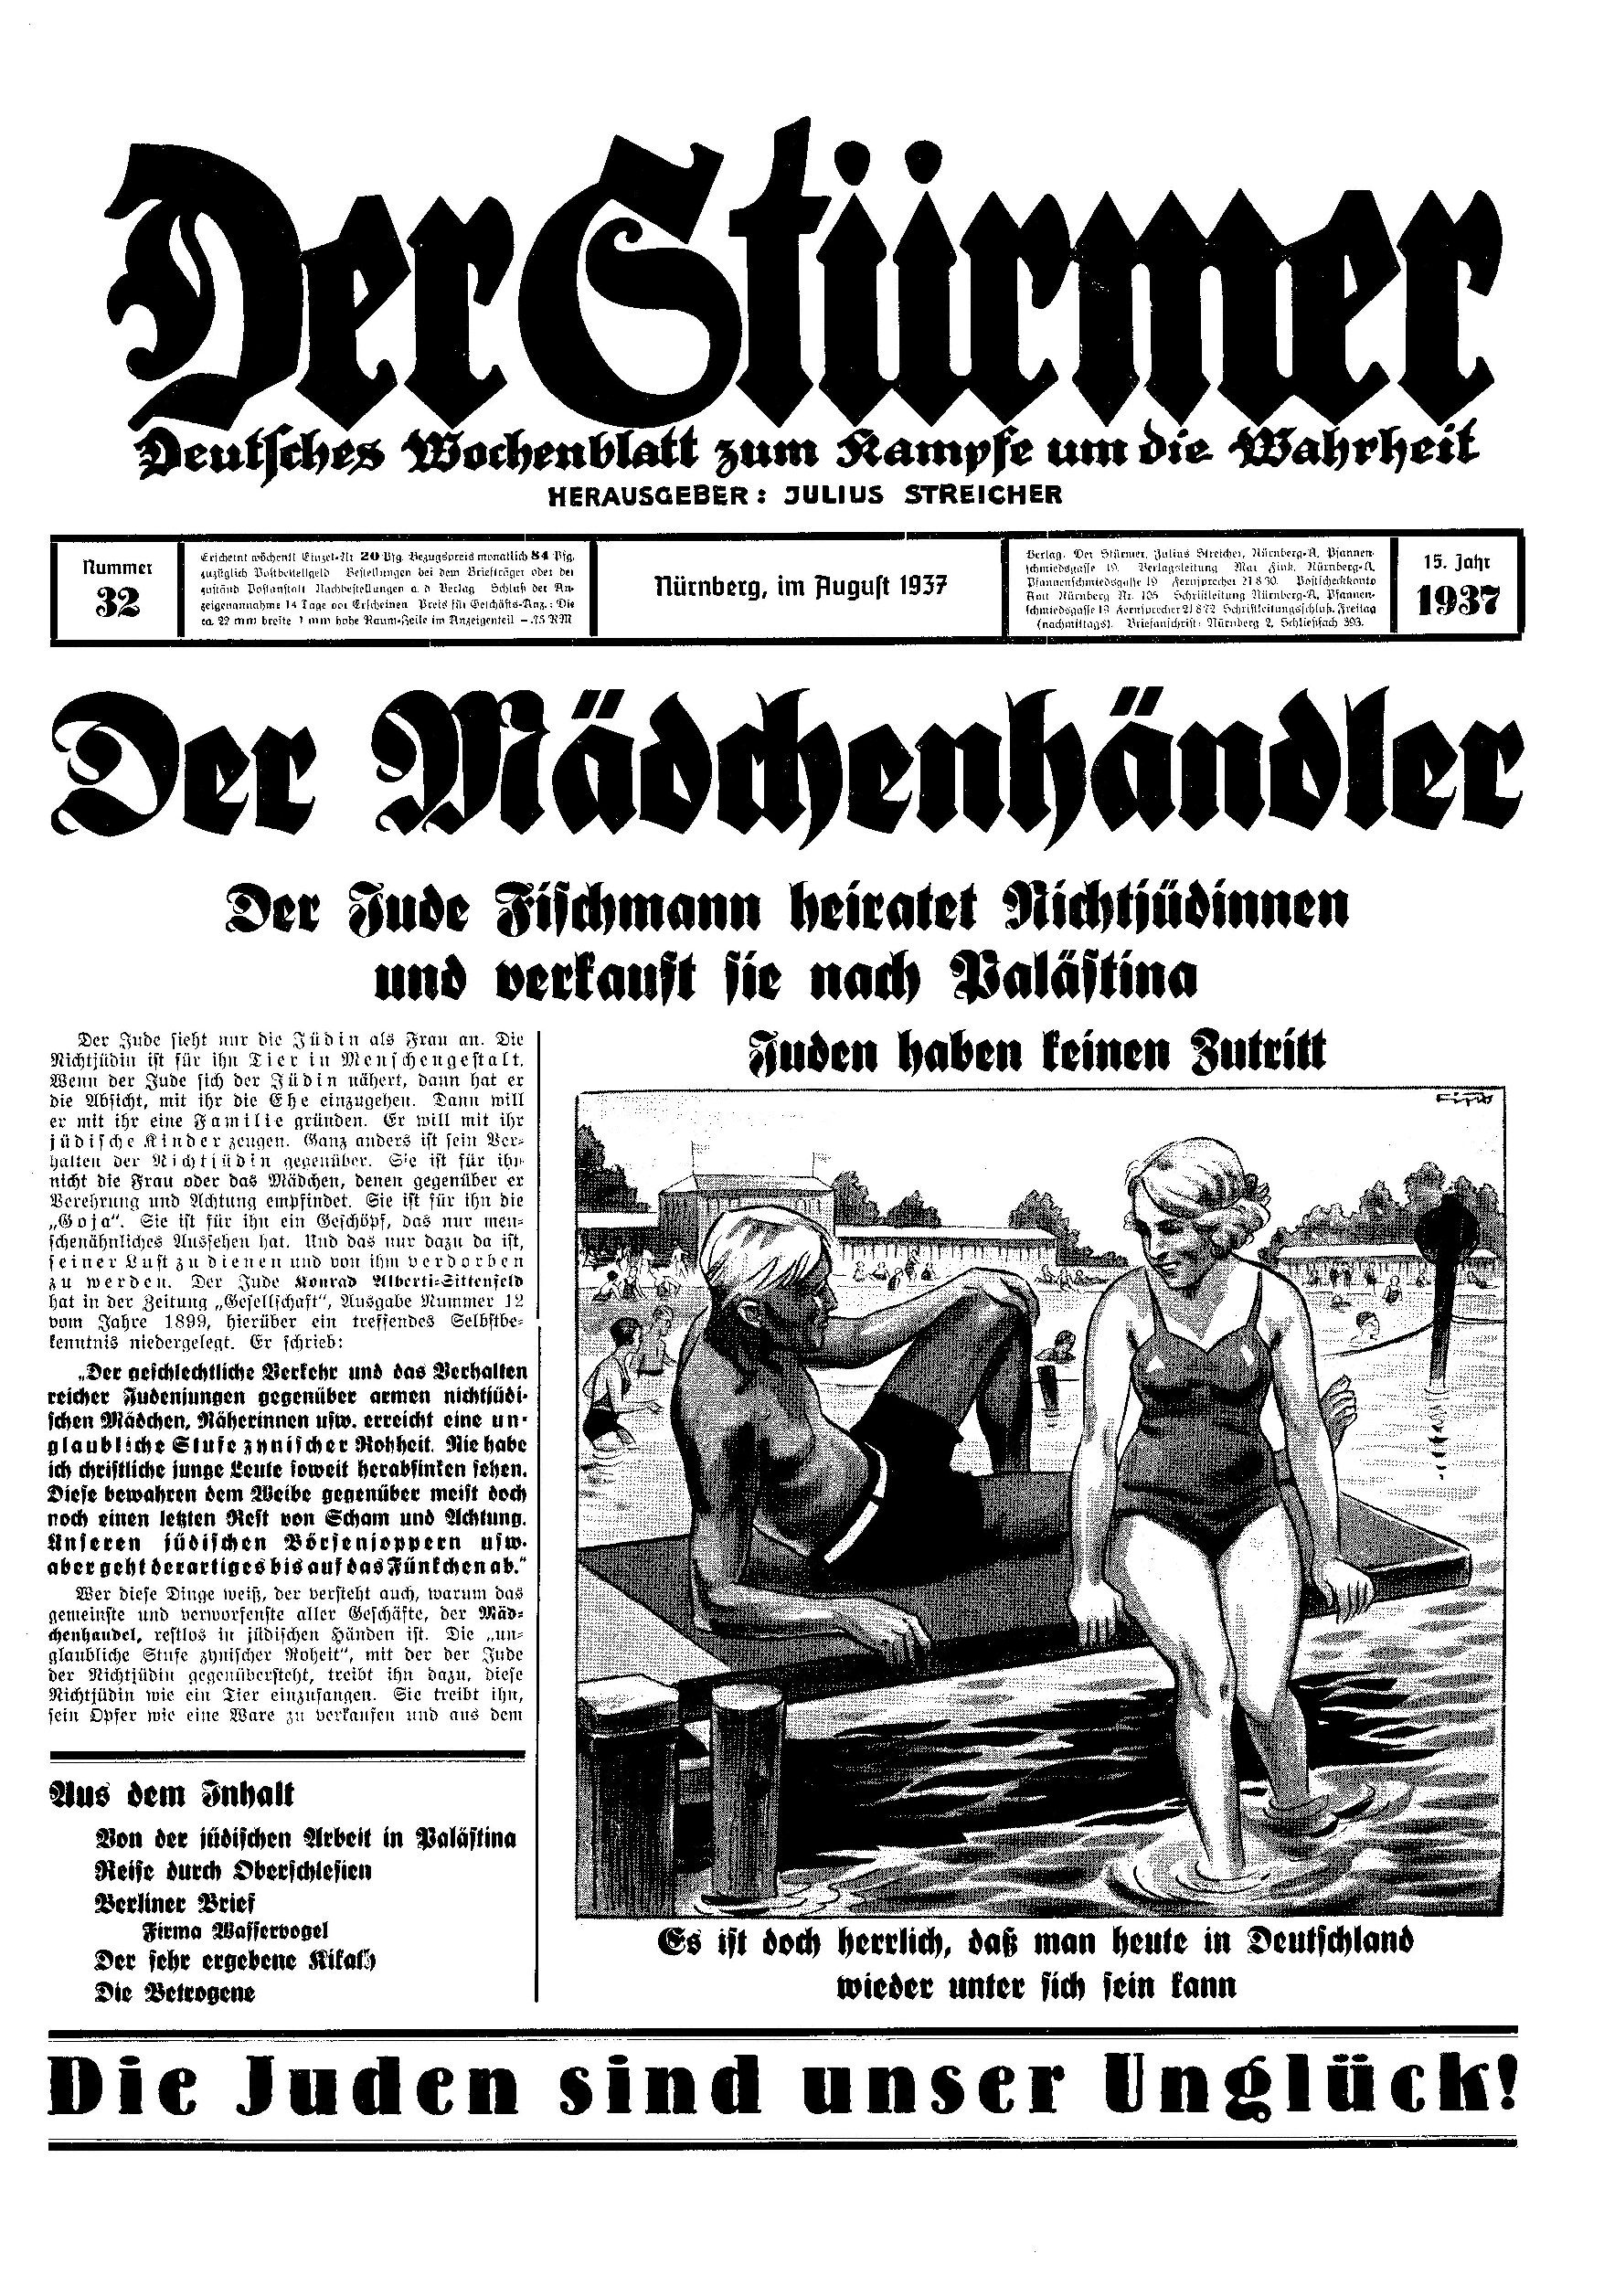 Der Stürmer - 1937 Nr. 32 - Der Mädchenhändler